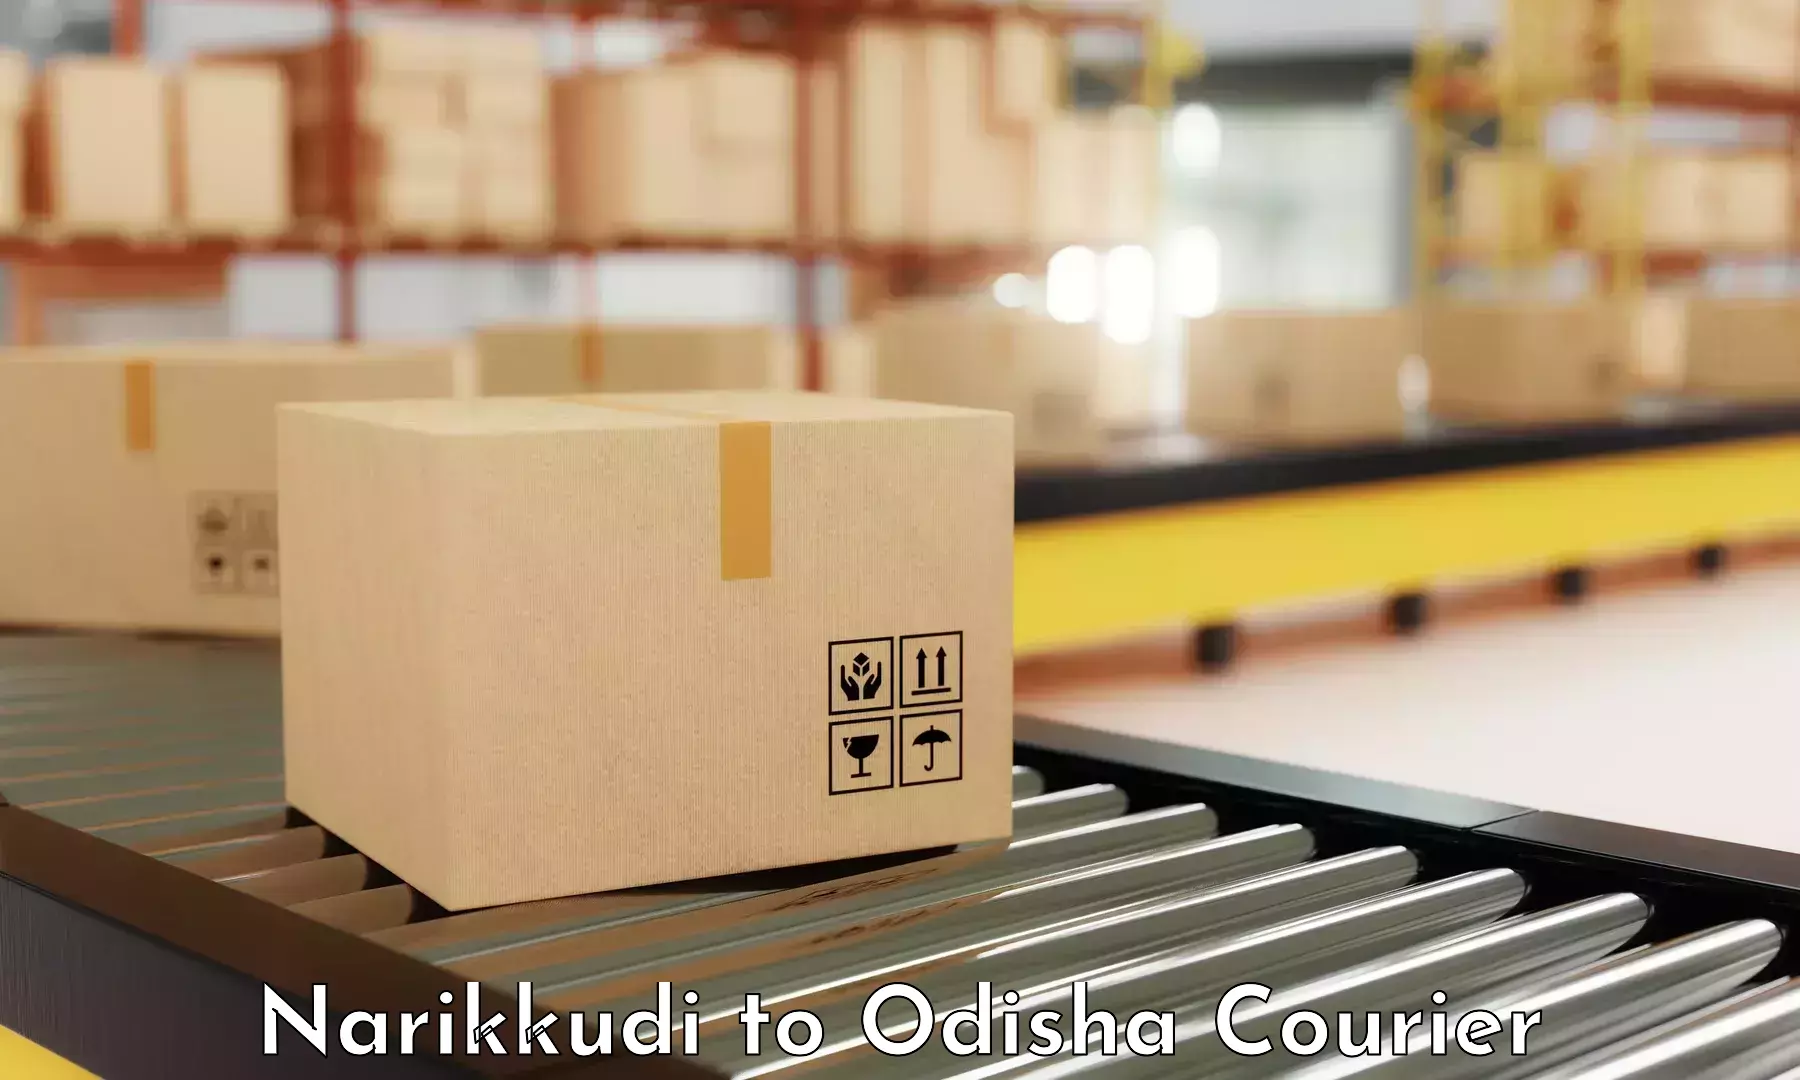 Customer-oriented courier services in Narikkudi to Kalahandi